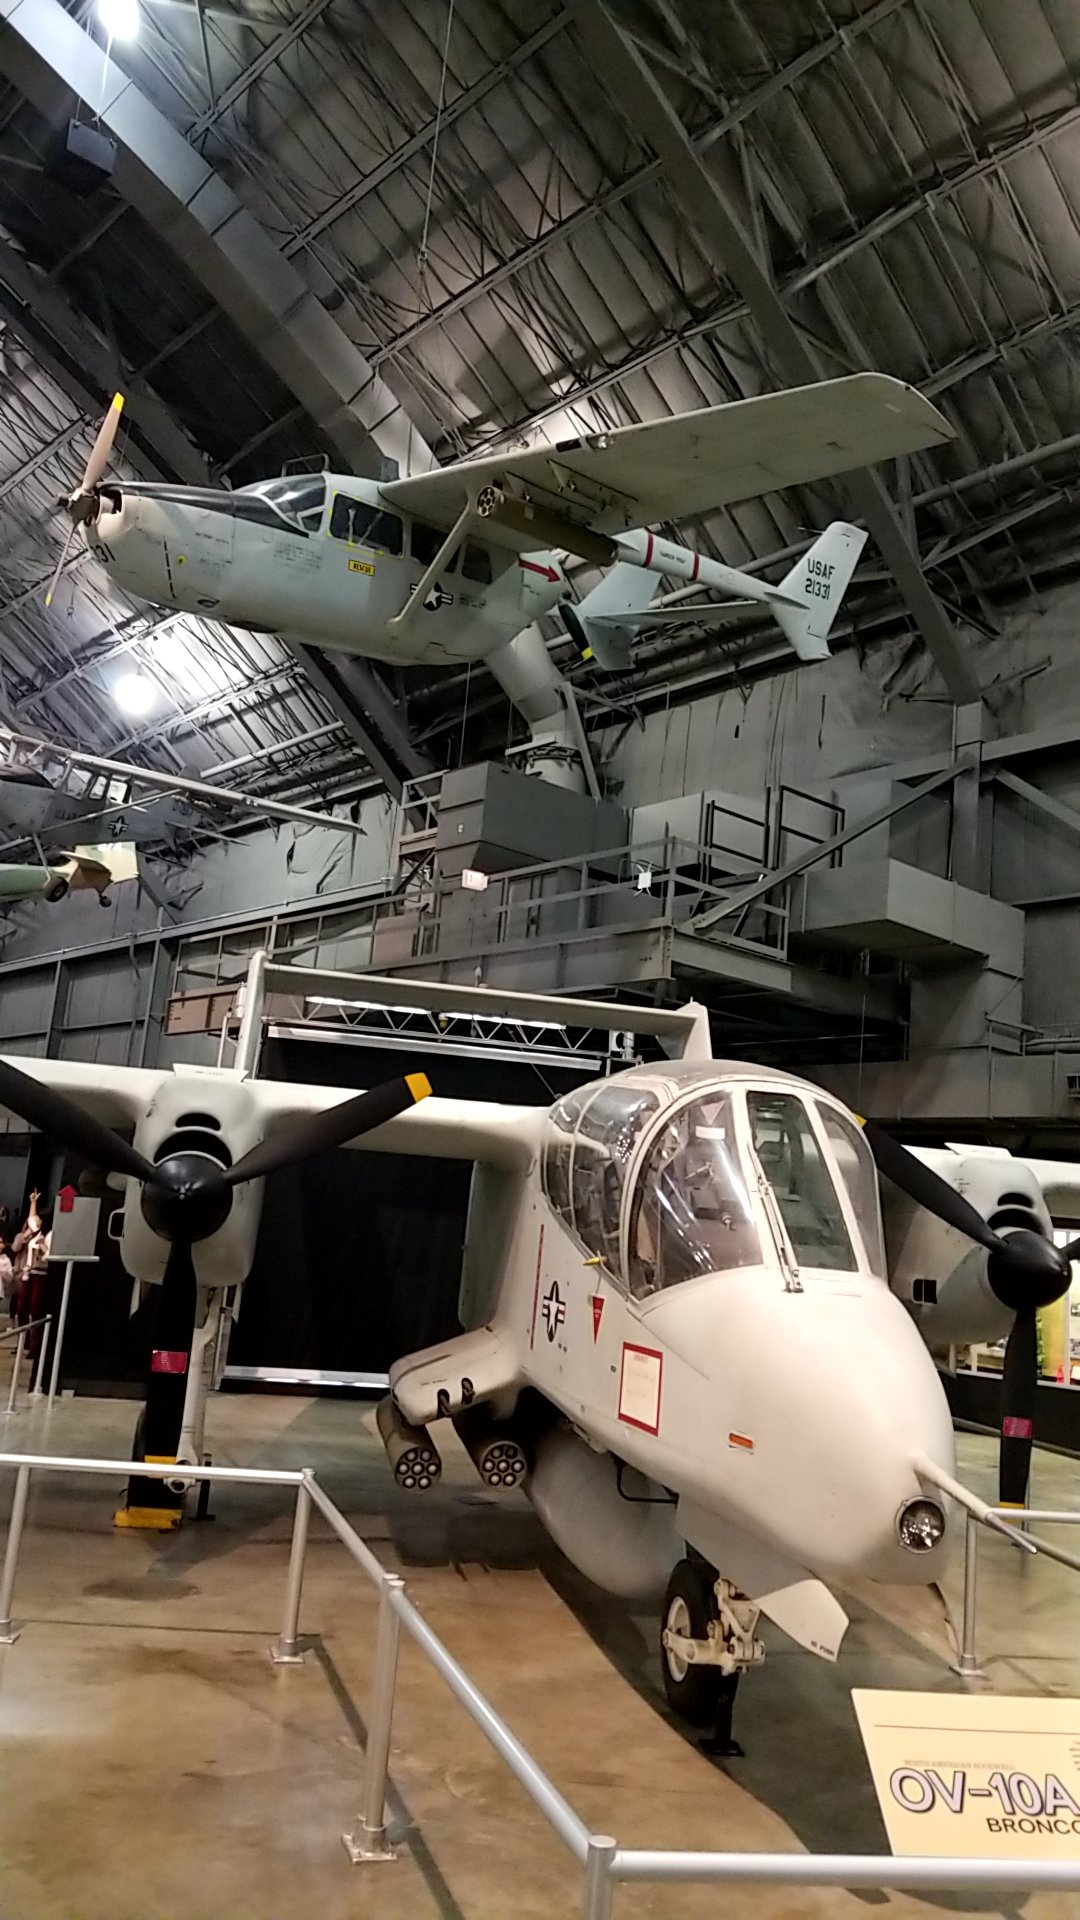 Seiichiro Morizawa ライト パターソン空軍基地アメリカ空軍博物館に行ってきました ここは飛行機好きにとって天国ですわ すげー T Co Yeekfdbmin Twitter